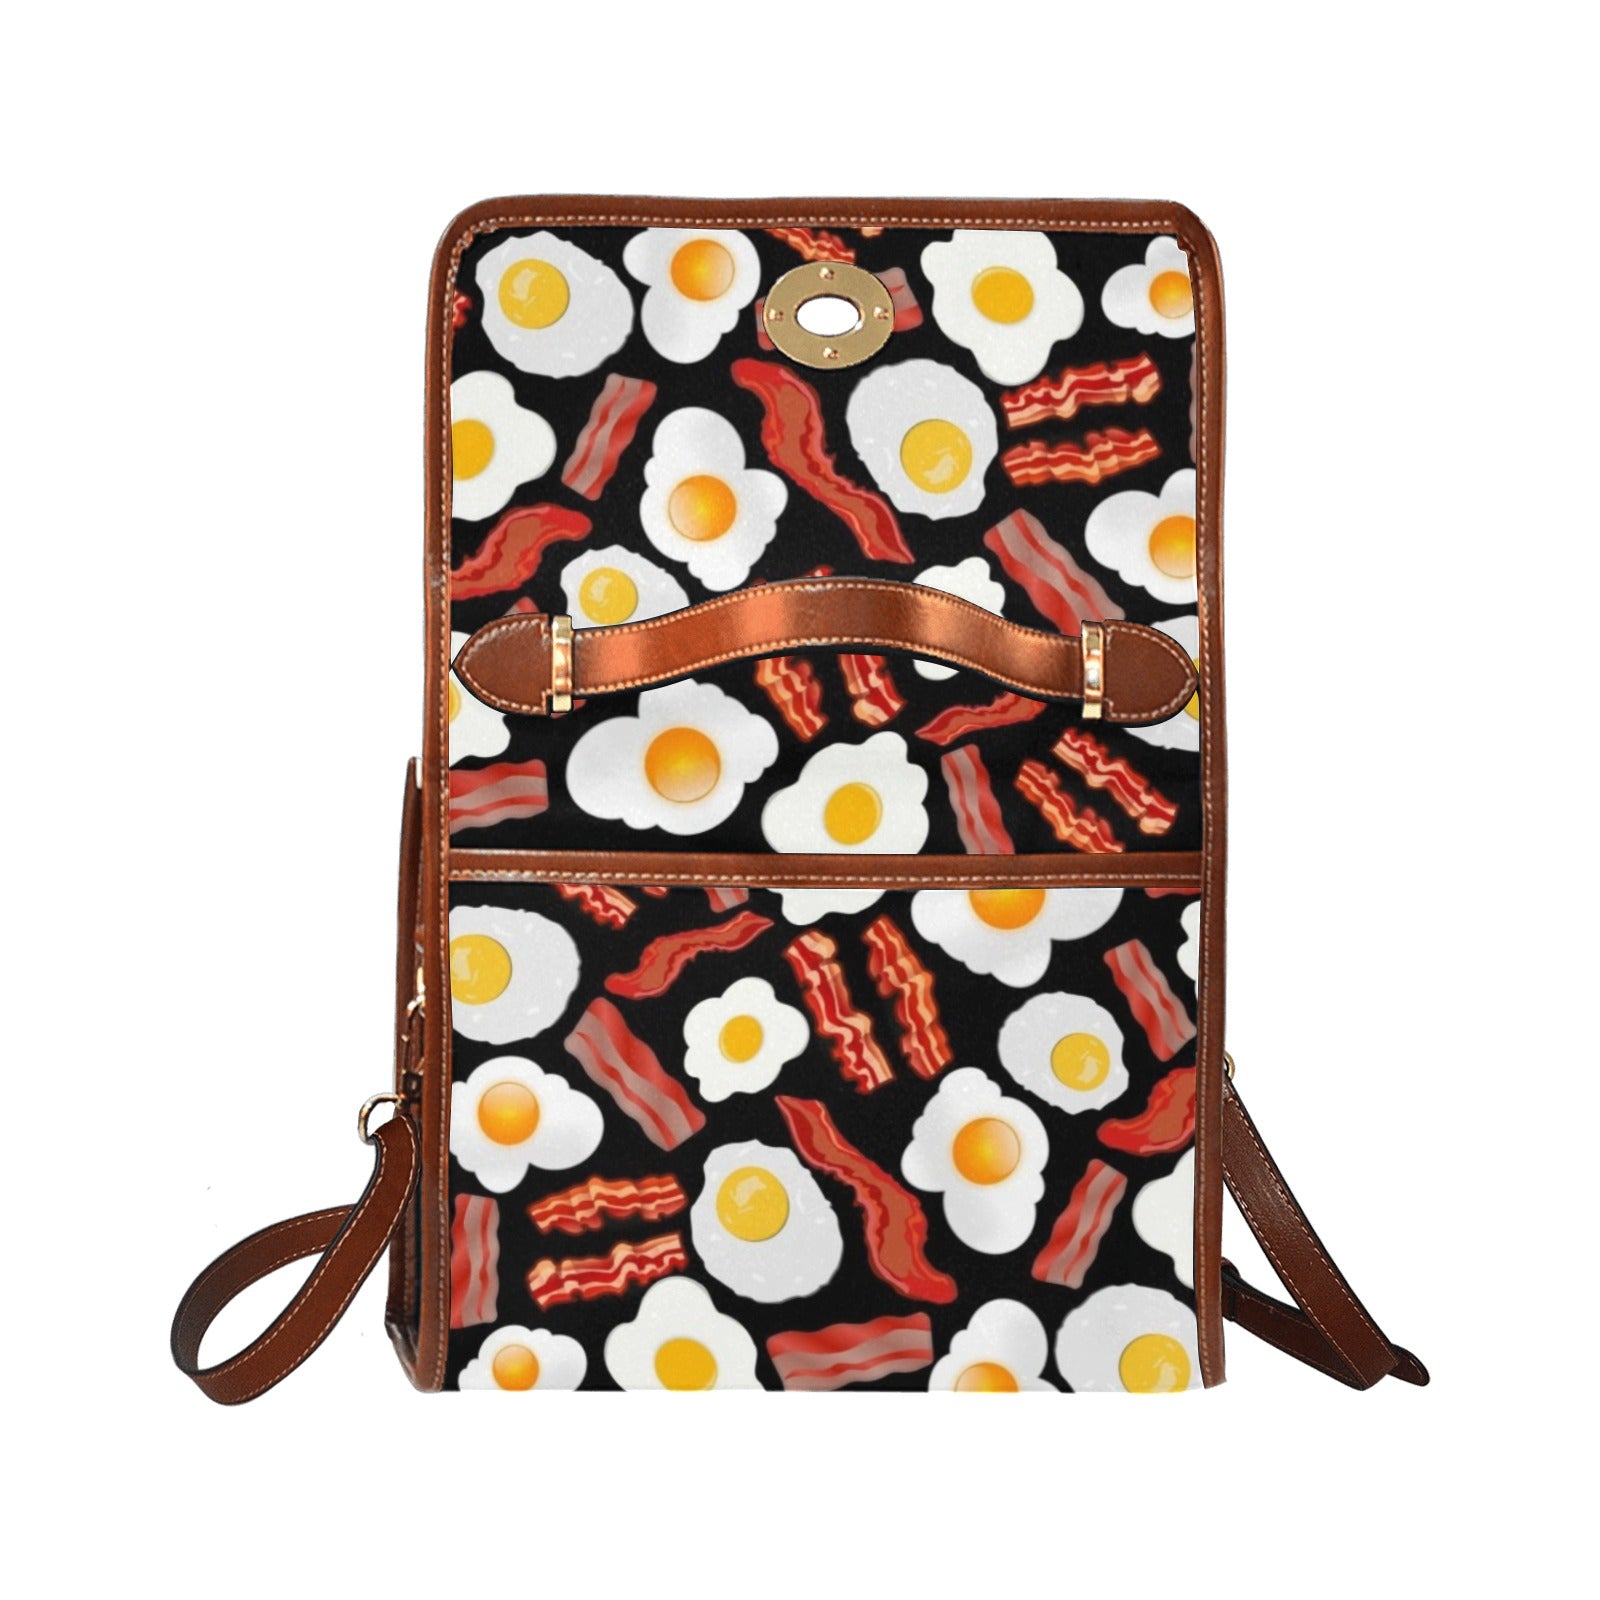 Bacon and Eggs - Waterproof Canvas Handbag